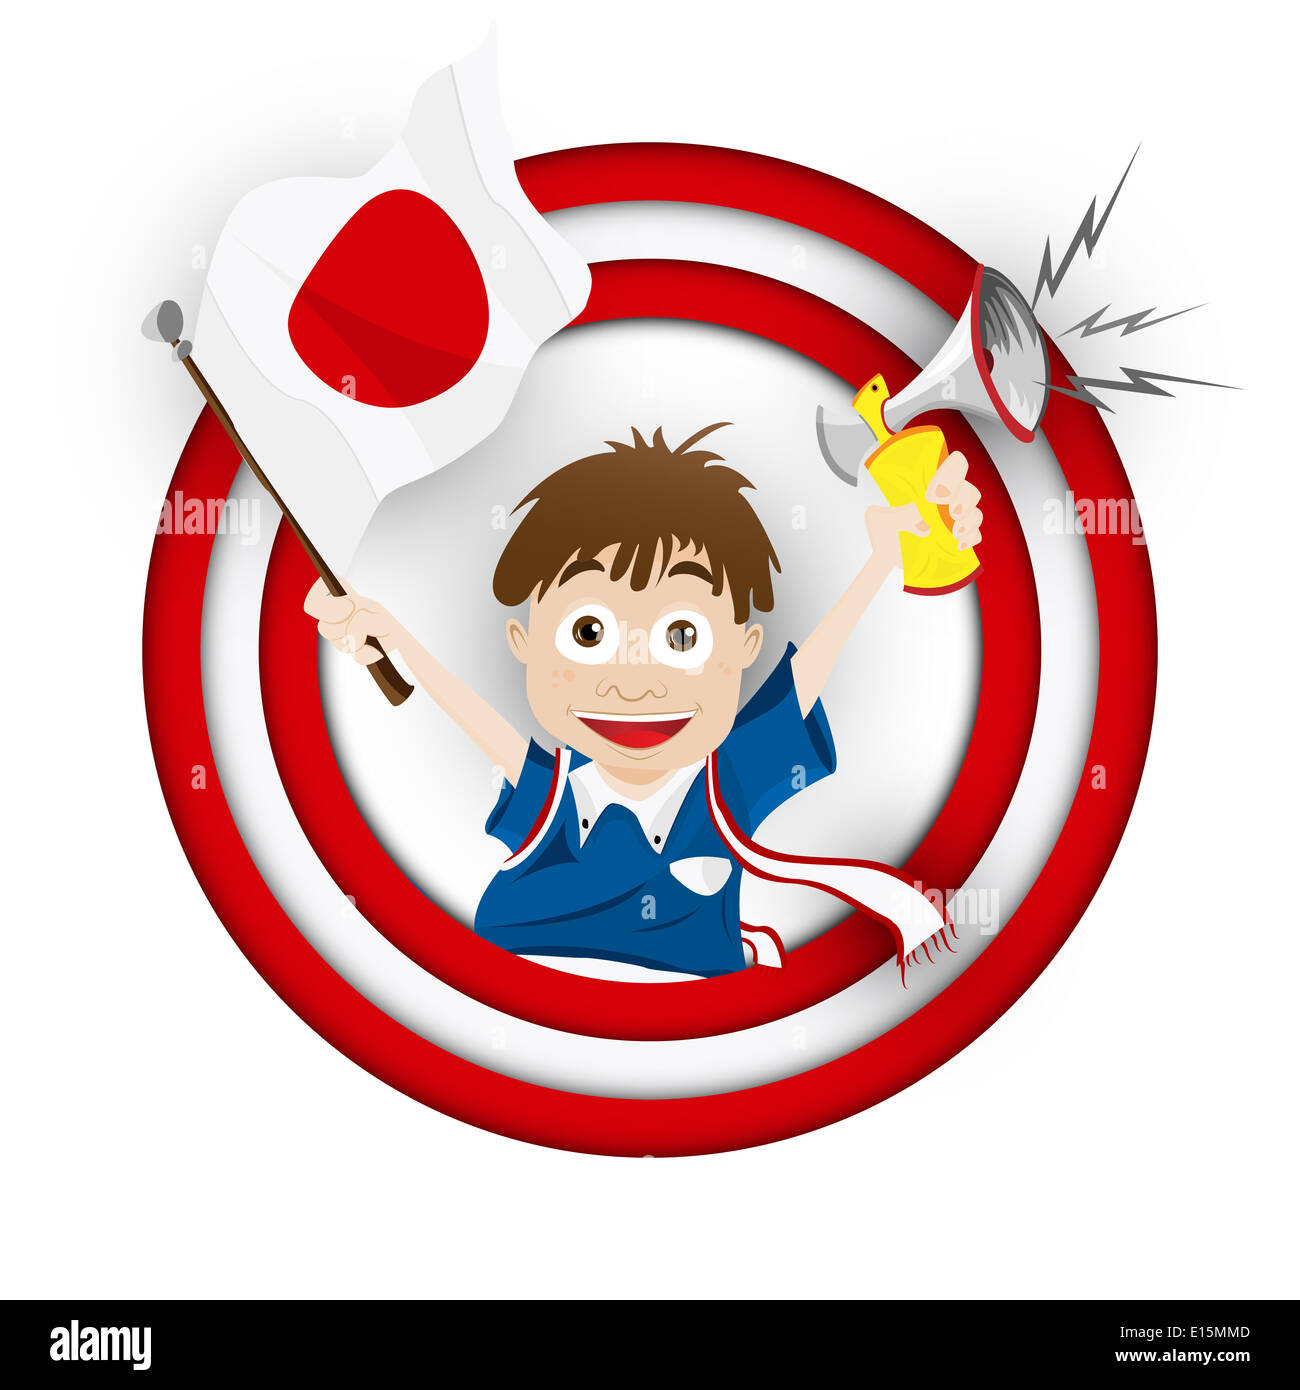 Vector - Japan Soccer Fan Flag Cartoon Stock Photo - Alamy